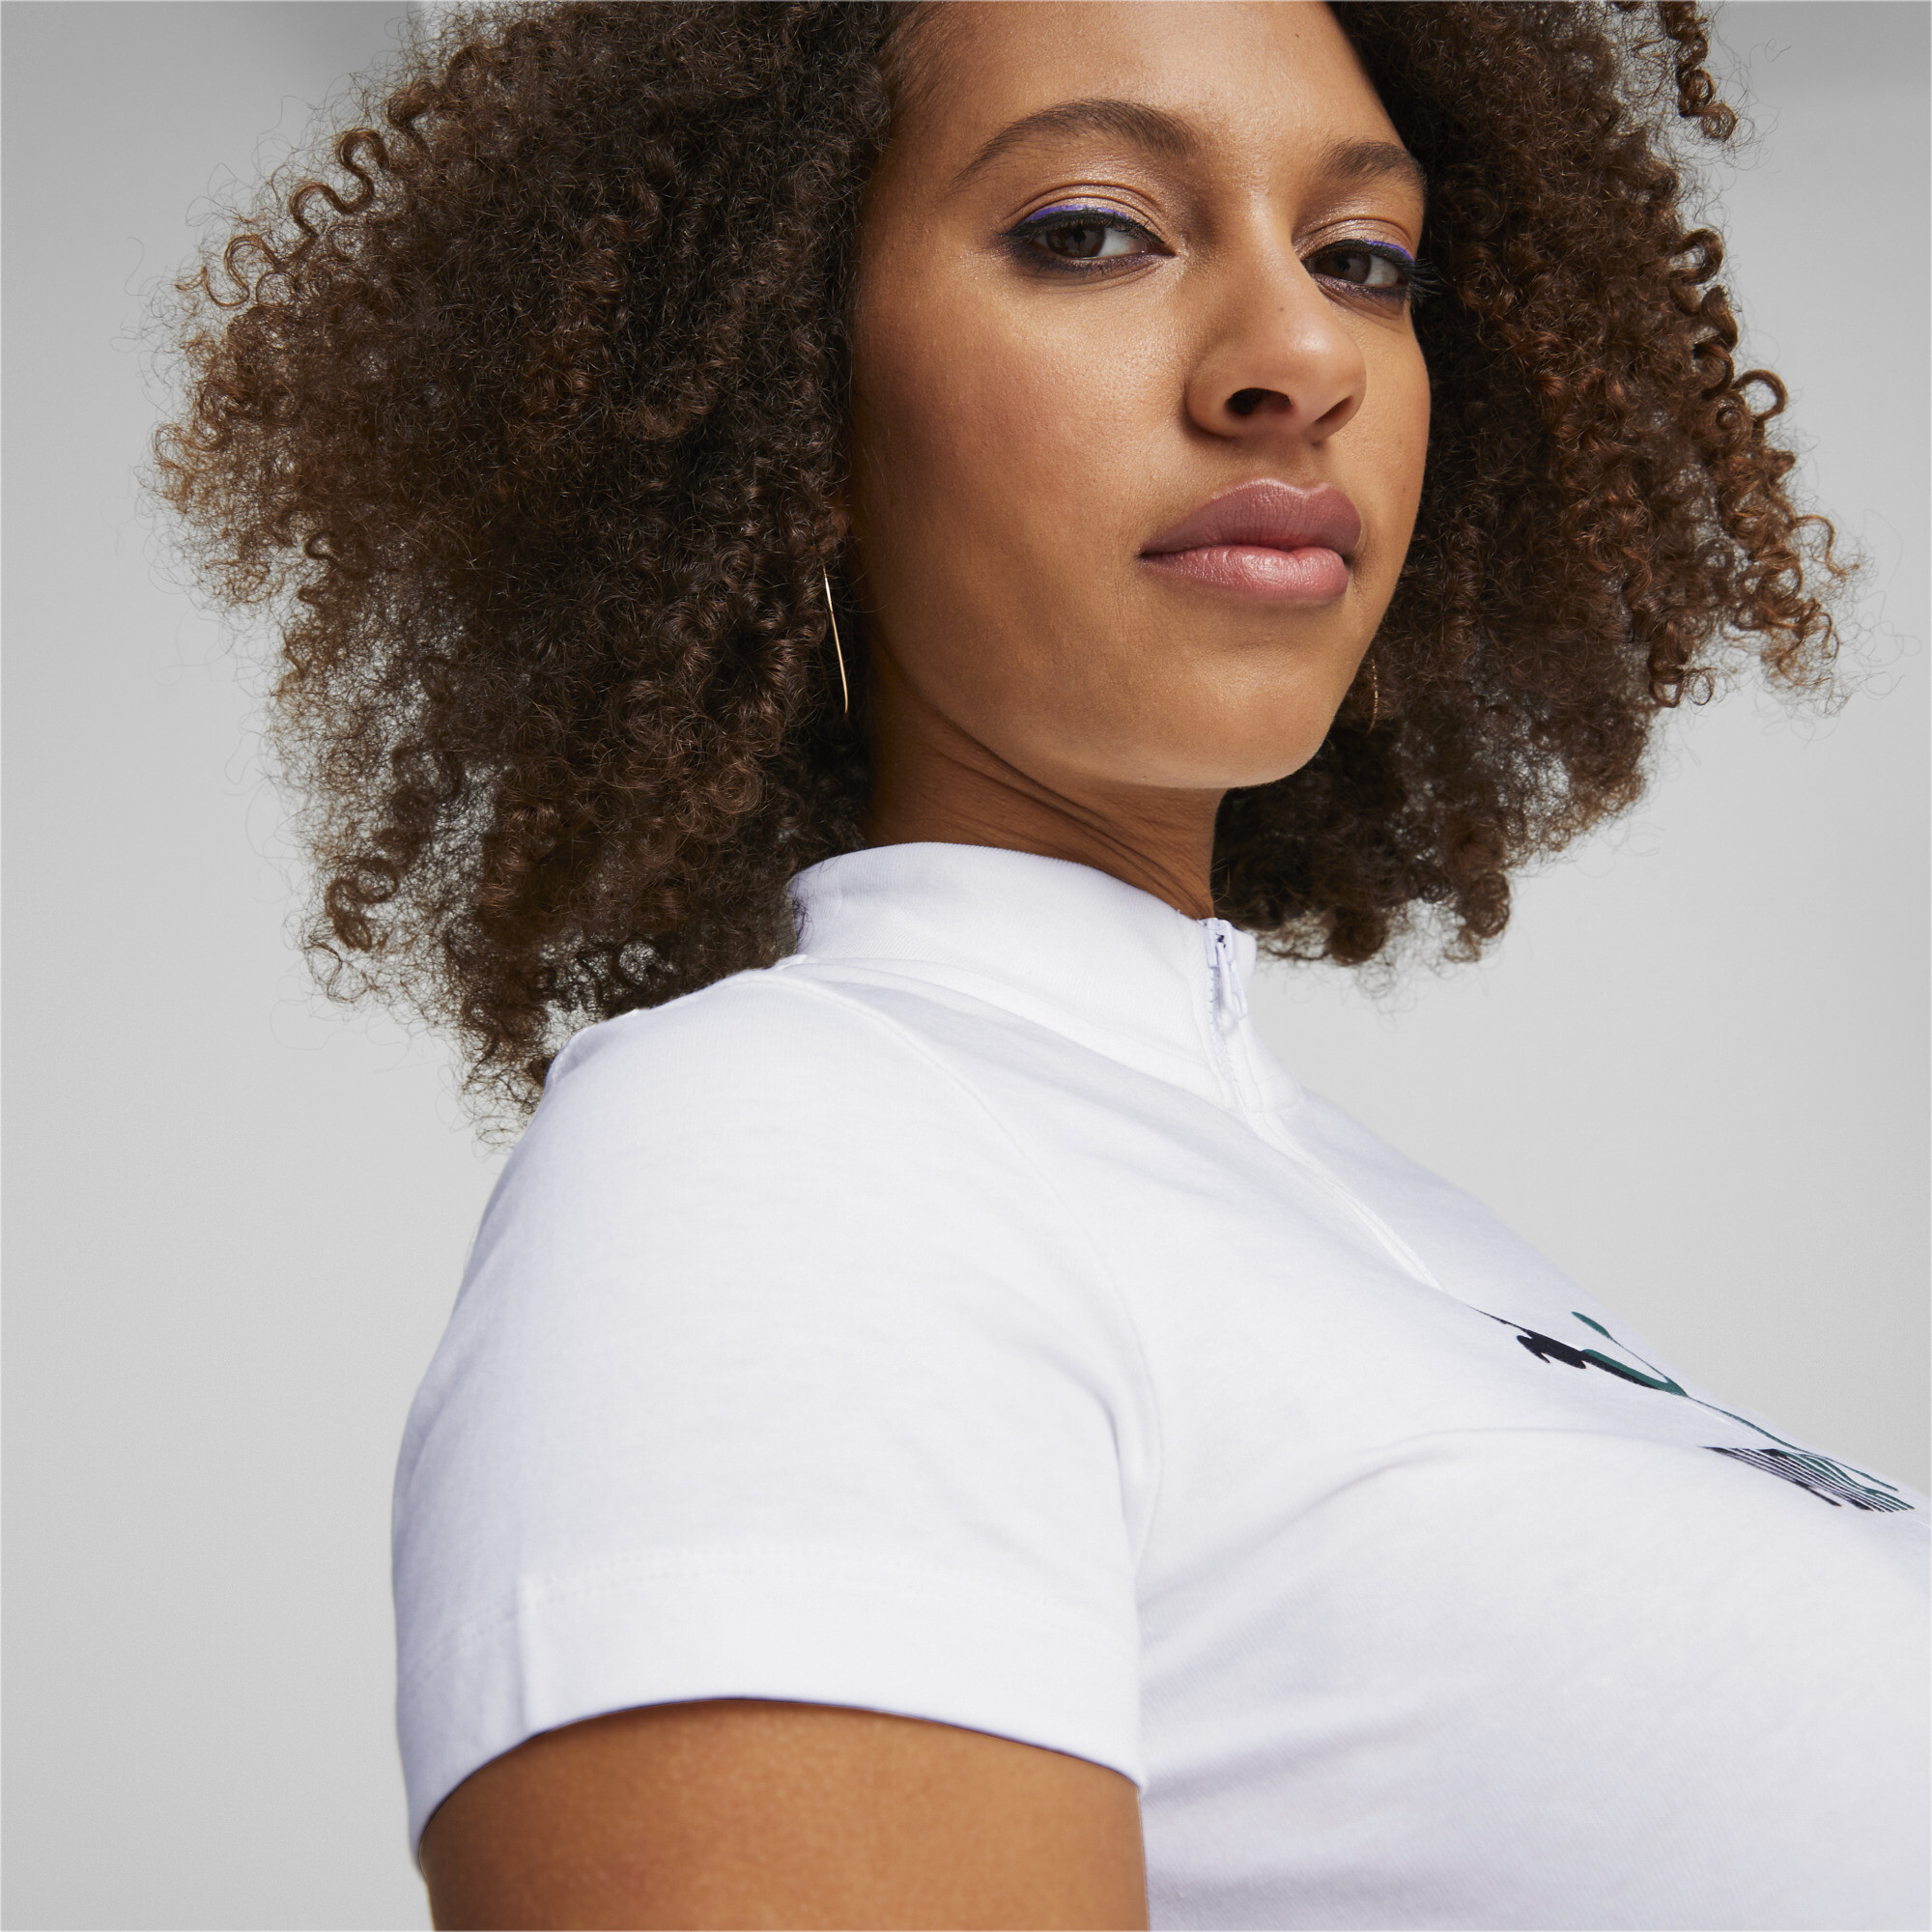 Women's PUMA Classics Quarter-Zip T-Shirt Women In White, Size XL